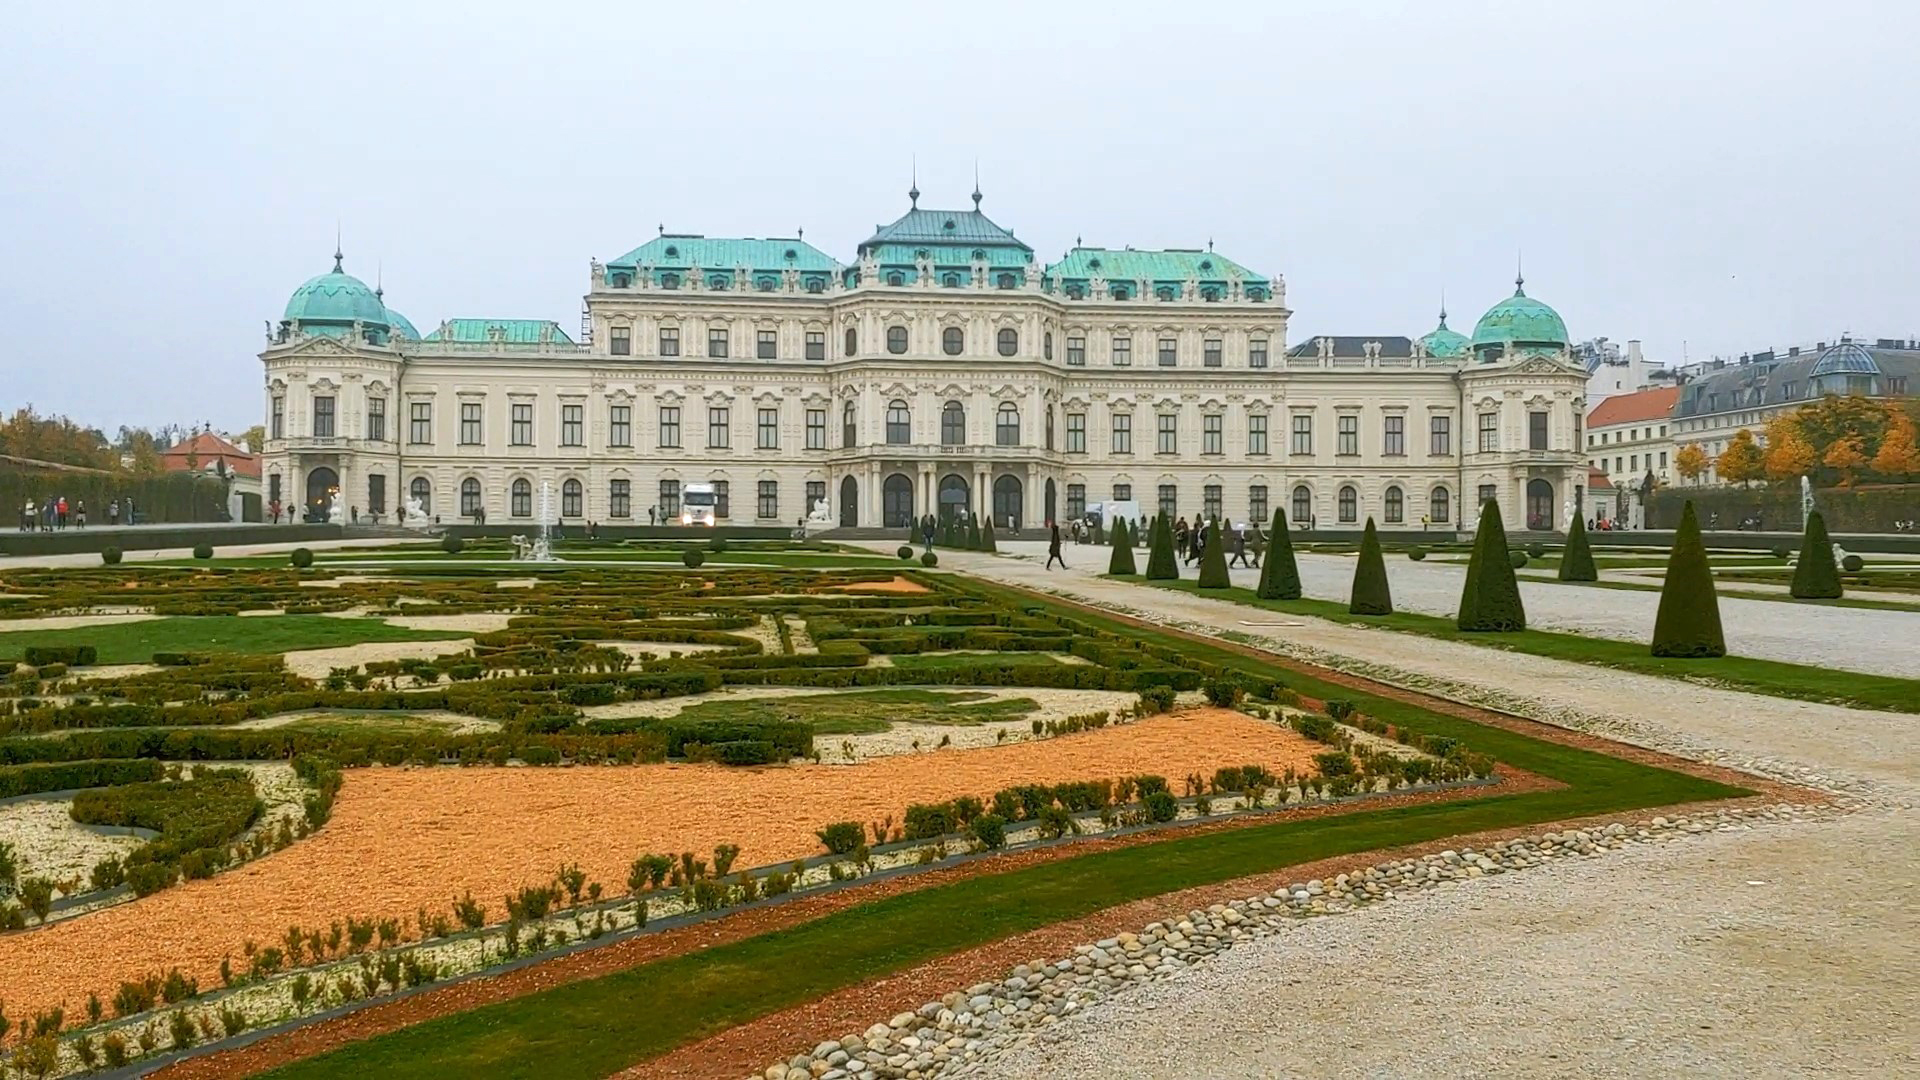 오스트리아 빈 남부에 있는 벨베데레 궁전은 가운데 정원을 중심으로 상궁과 하궁으로 나눠지며, 상궁은 미술관, 하궁은 특별전시관으로 운영되고 있다.